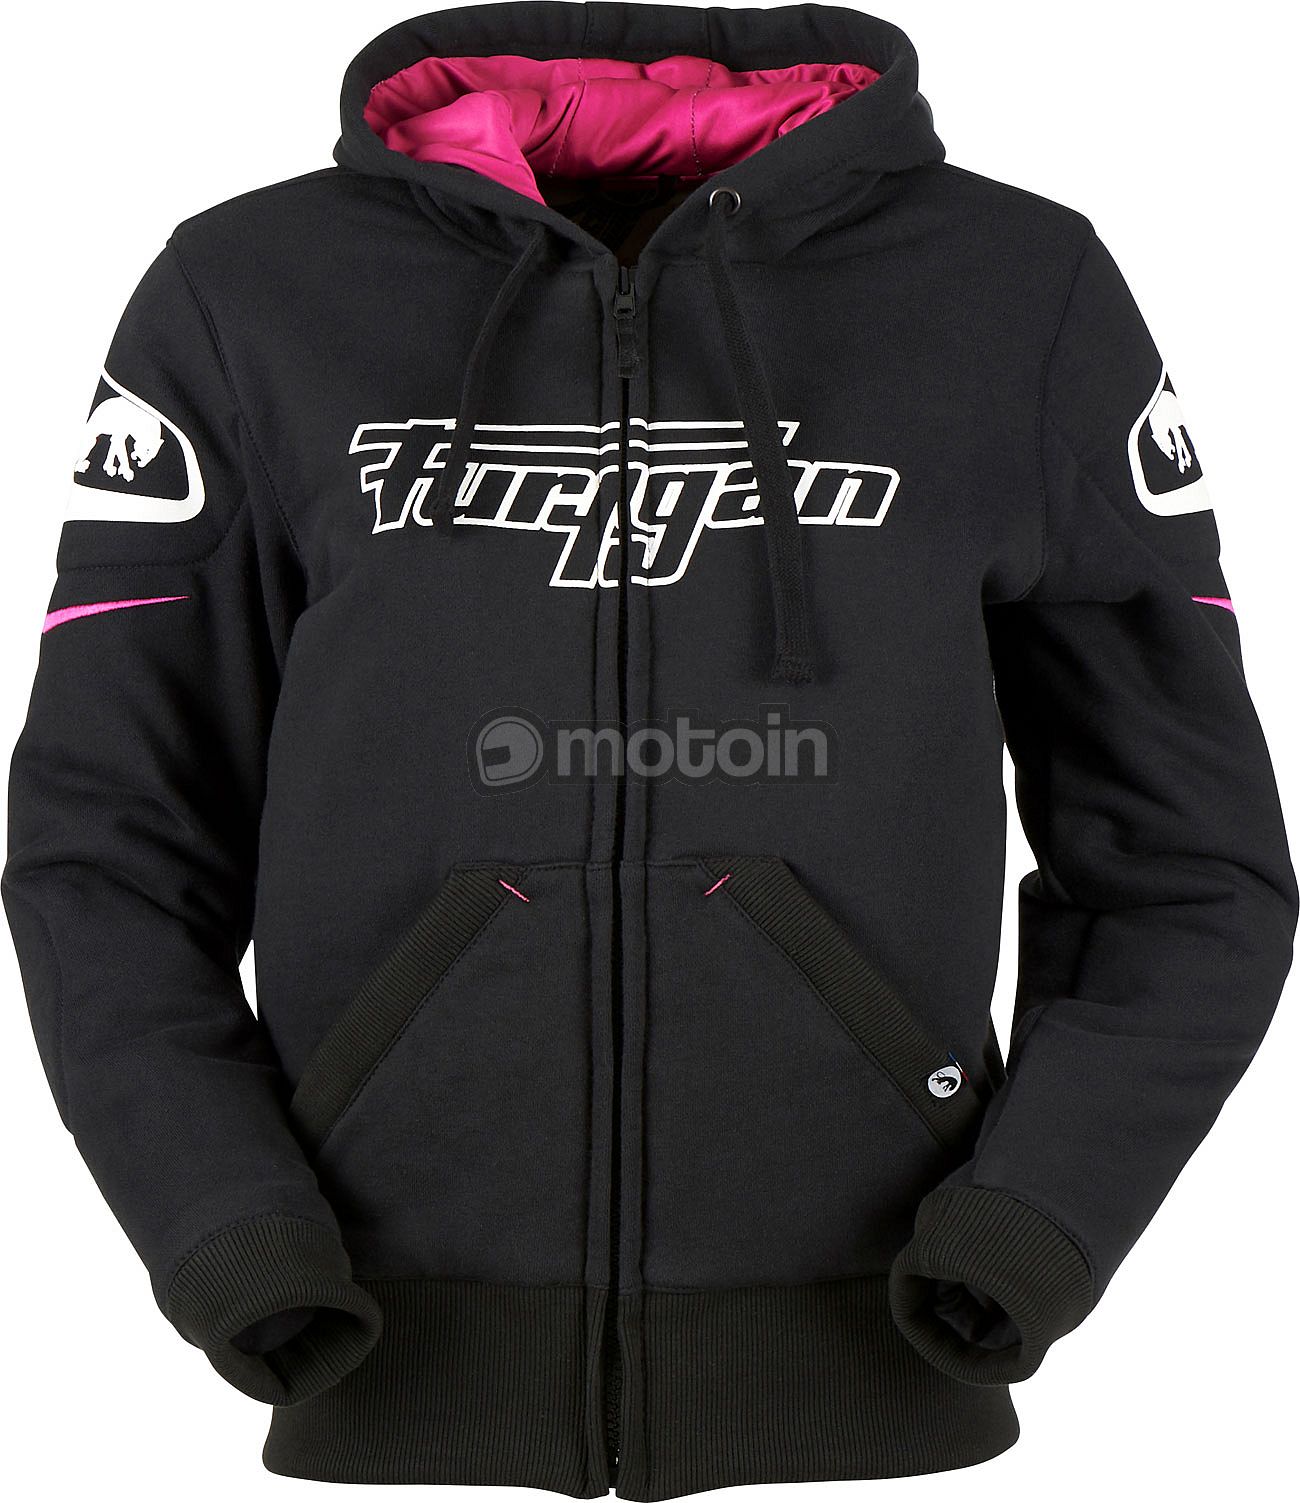 Furygan Luxio, zip hoodie kvinder